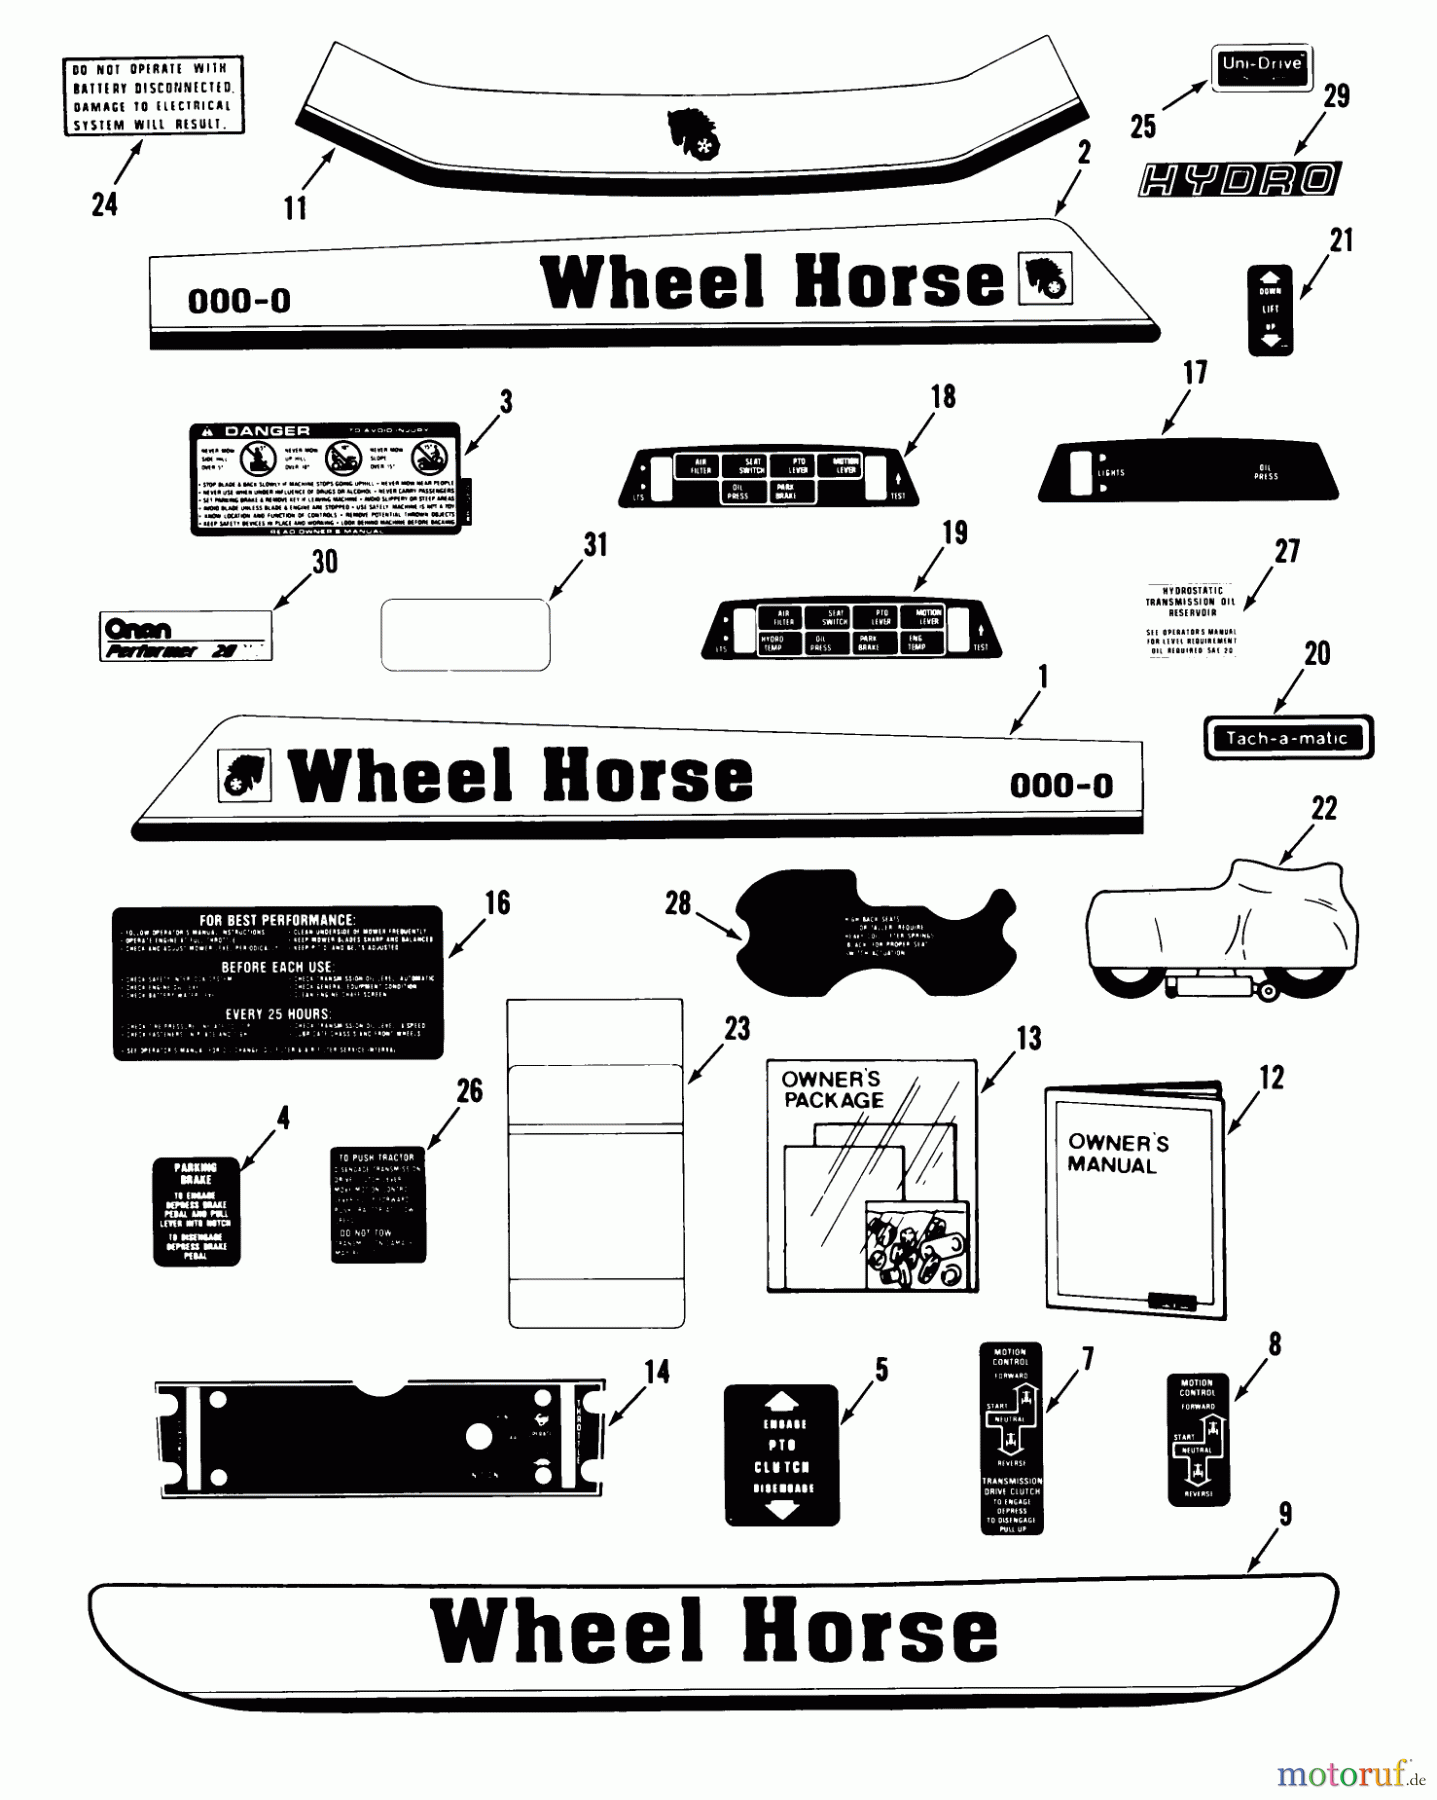  Toro Neu Mowers, Lawn & Garden Tractor Seite 1 31-20OE01 (520-H) - Toro 520-H Garden Tractor, 1988 DECALS